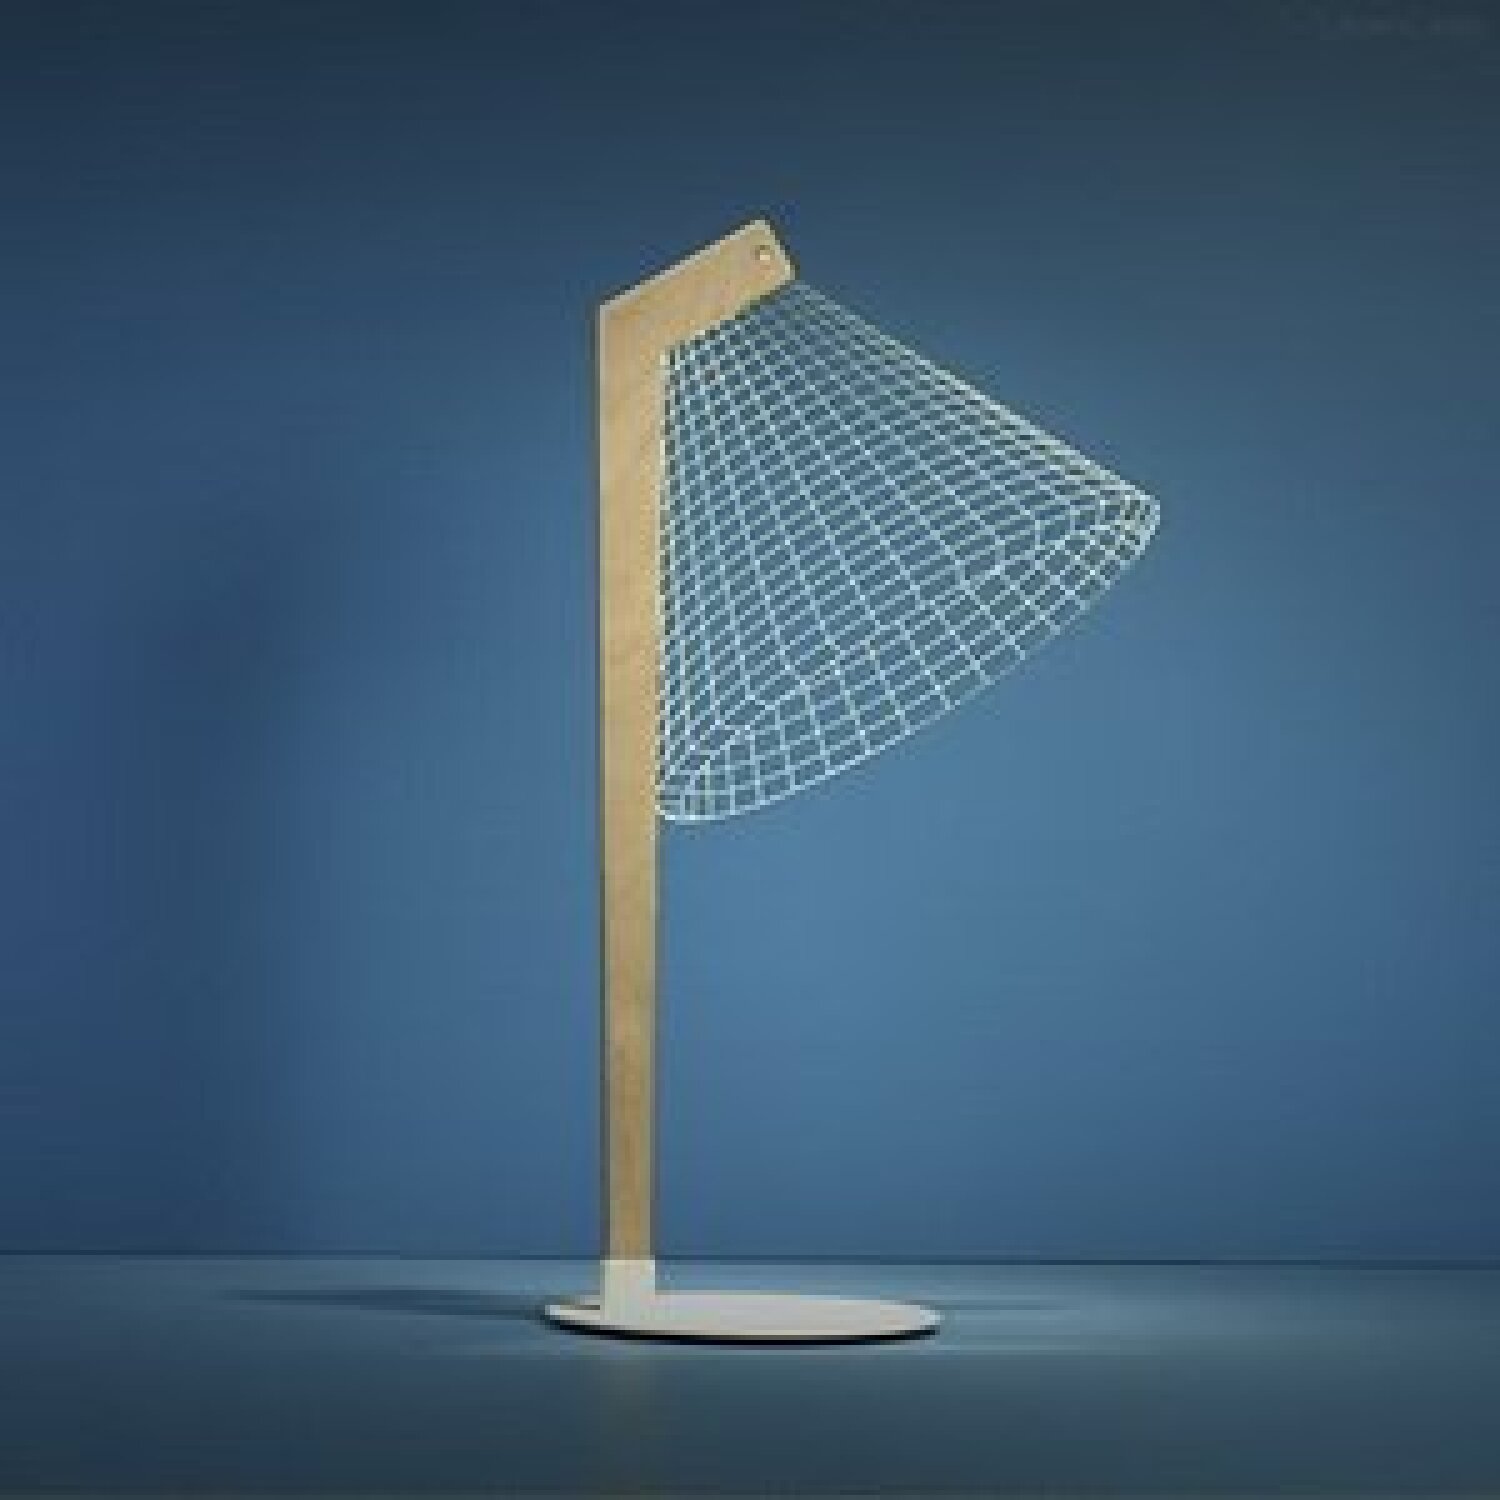 <a href="https://www.moderndigz.com/DESKi LED Lamp" target="_blank" rel="noopener nofollow noreferrer">DESKi LED Lamp</a>